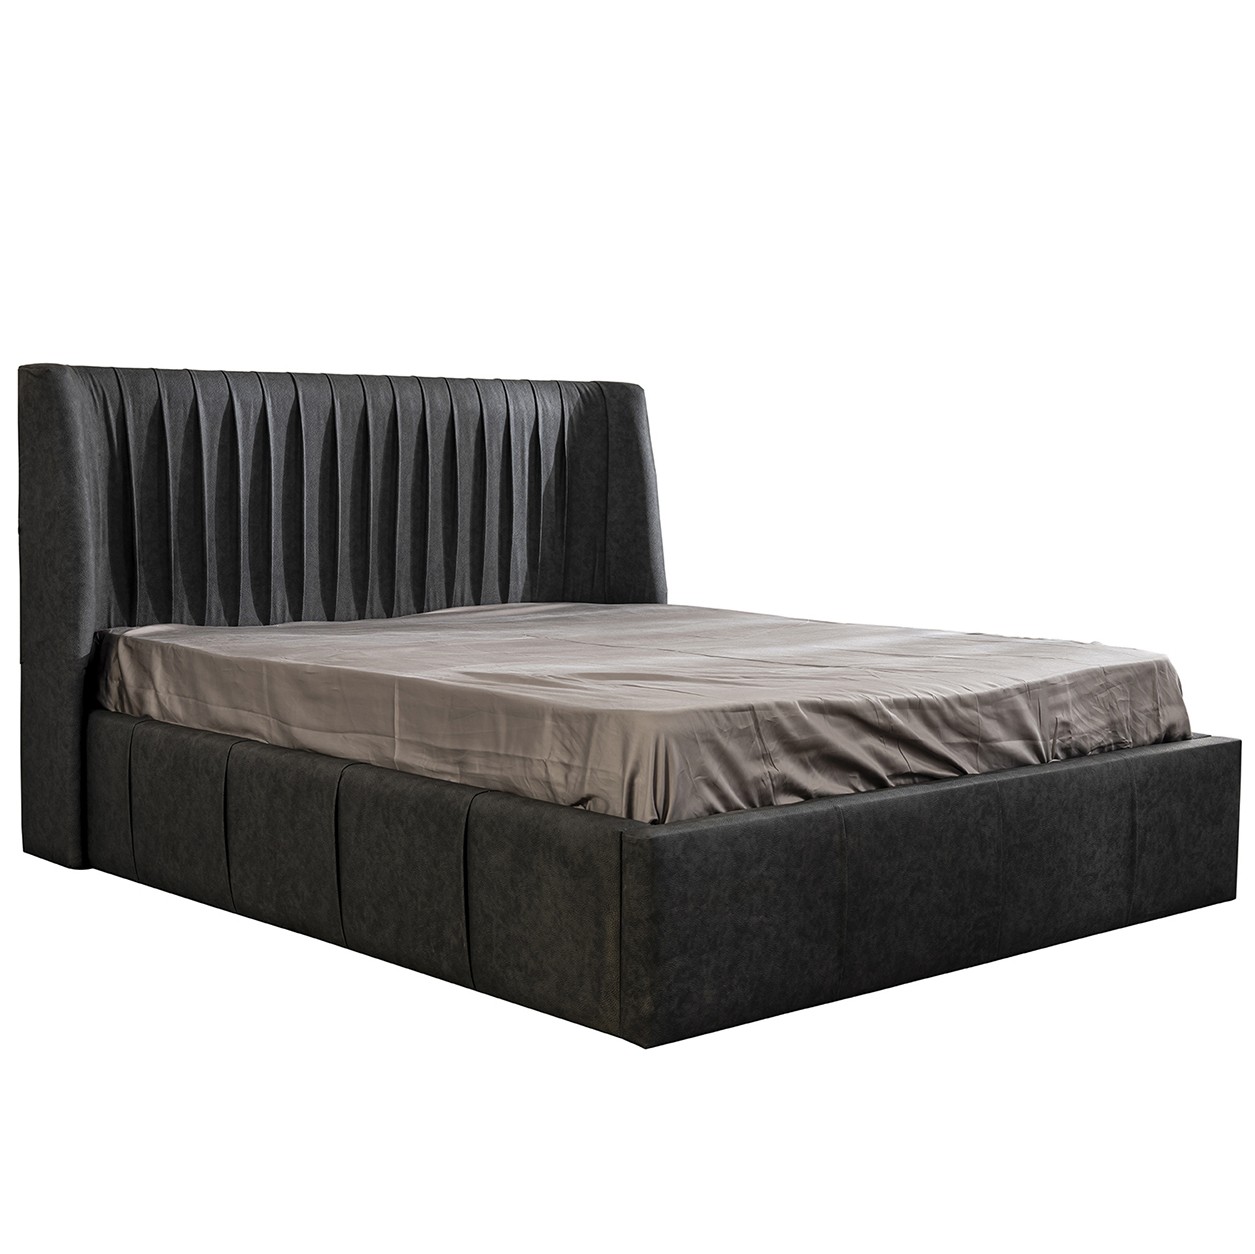 Prada Bed With Storage 160x200 cm